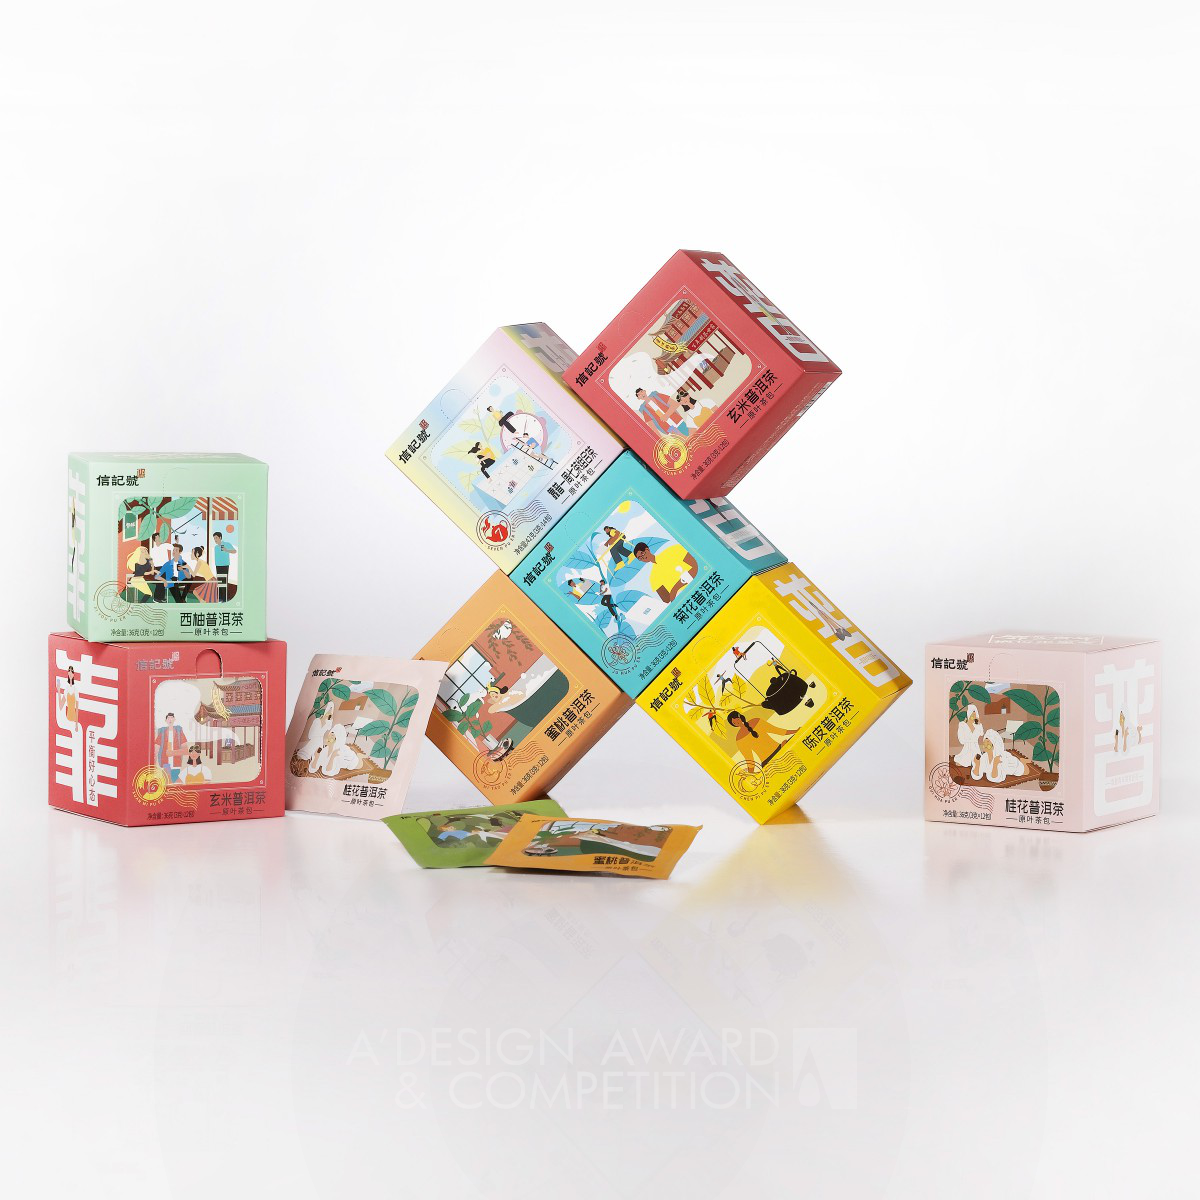 KaoPu Tea Packaging by Mars Team